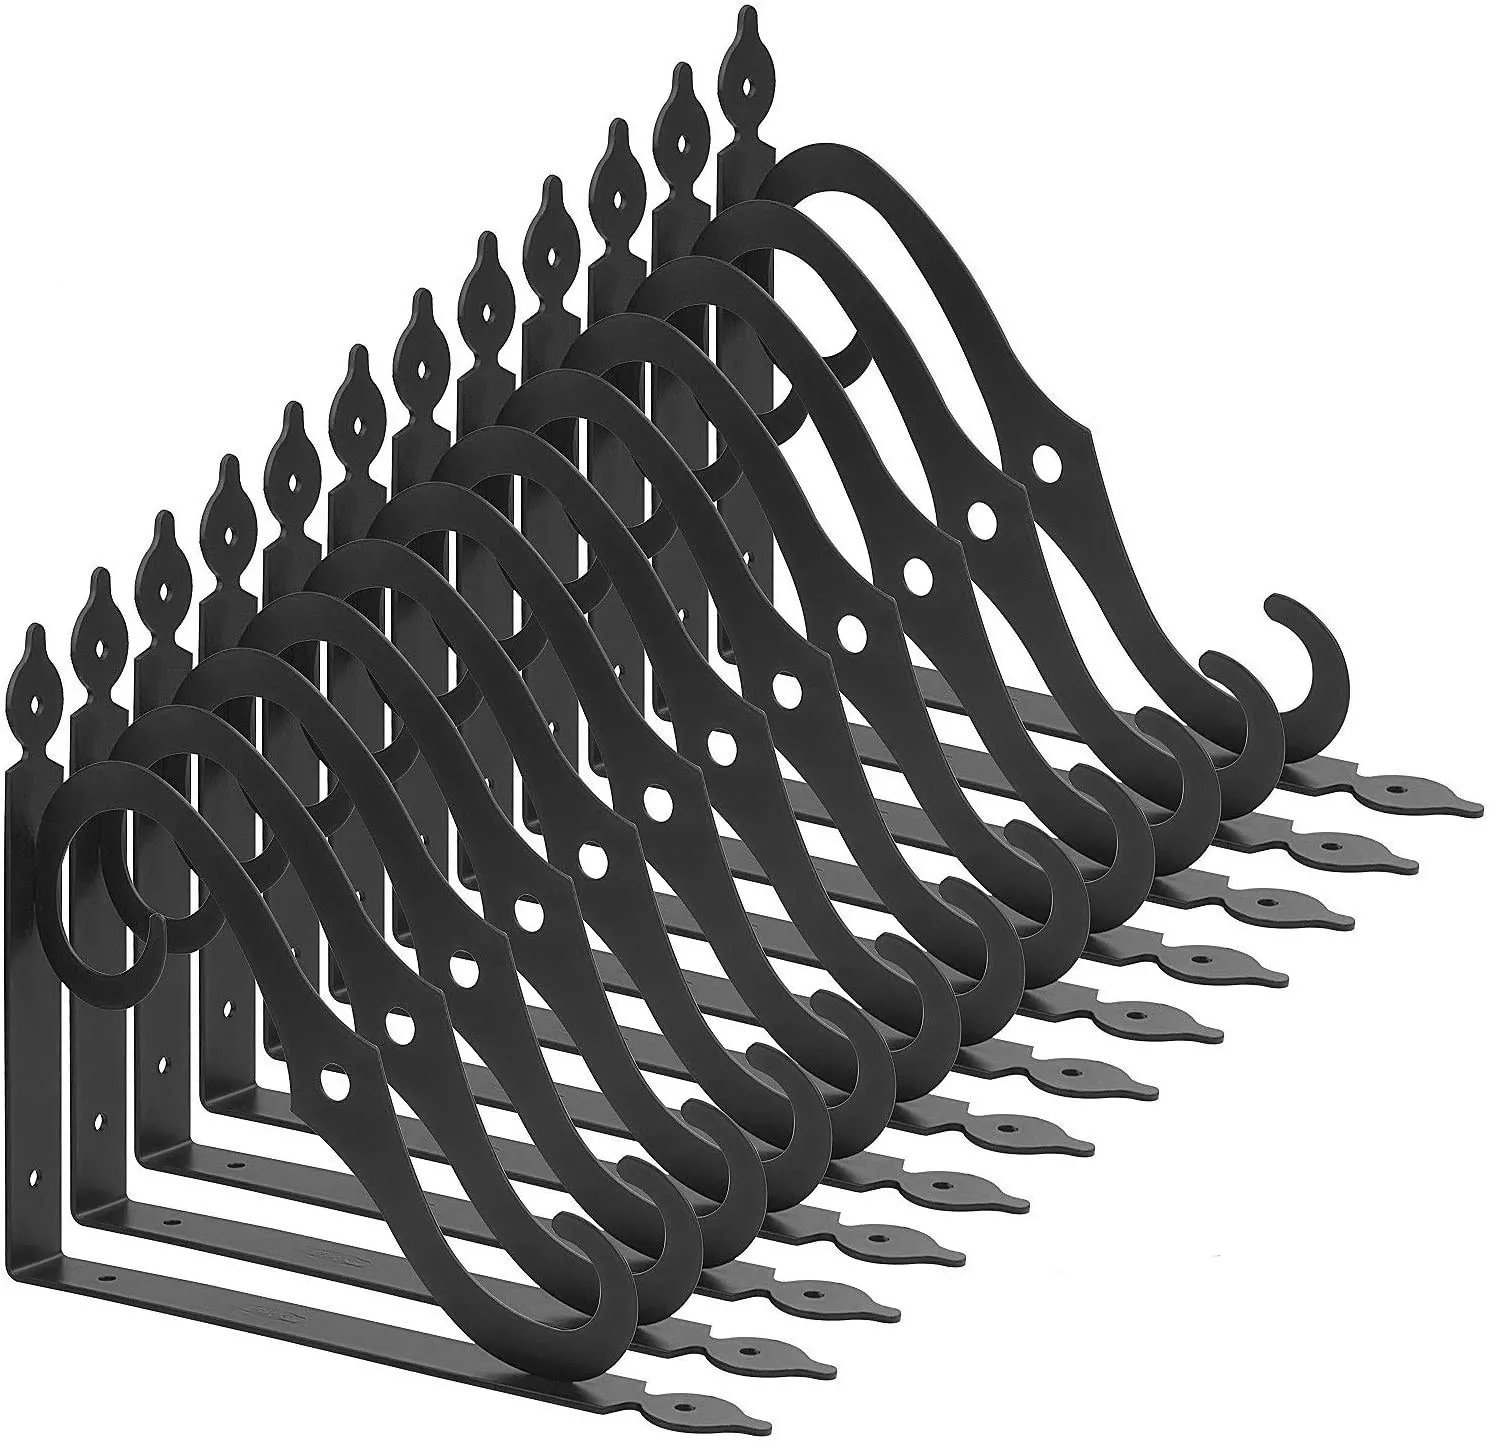 

Folding metal pipe shelf brackets